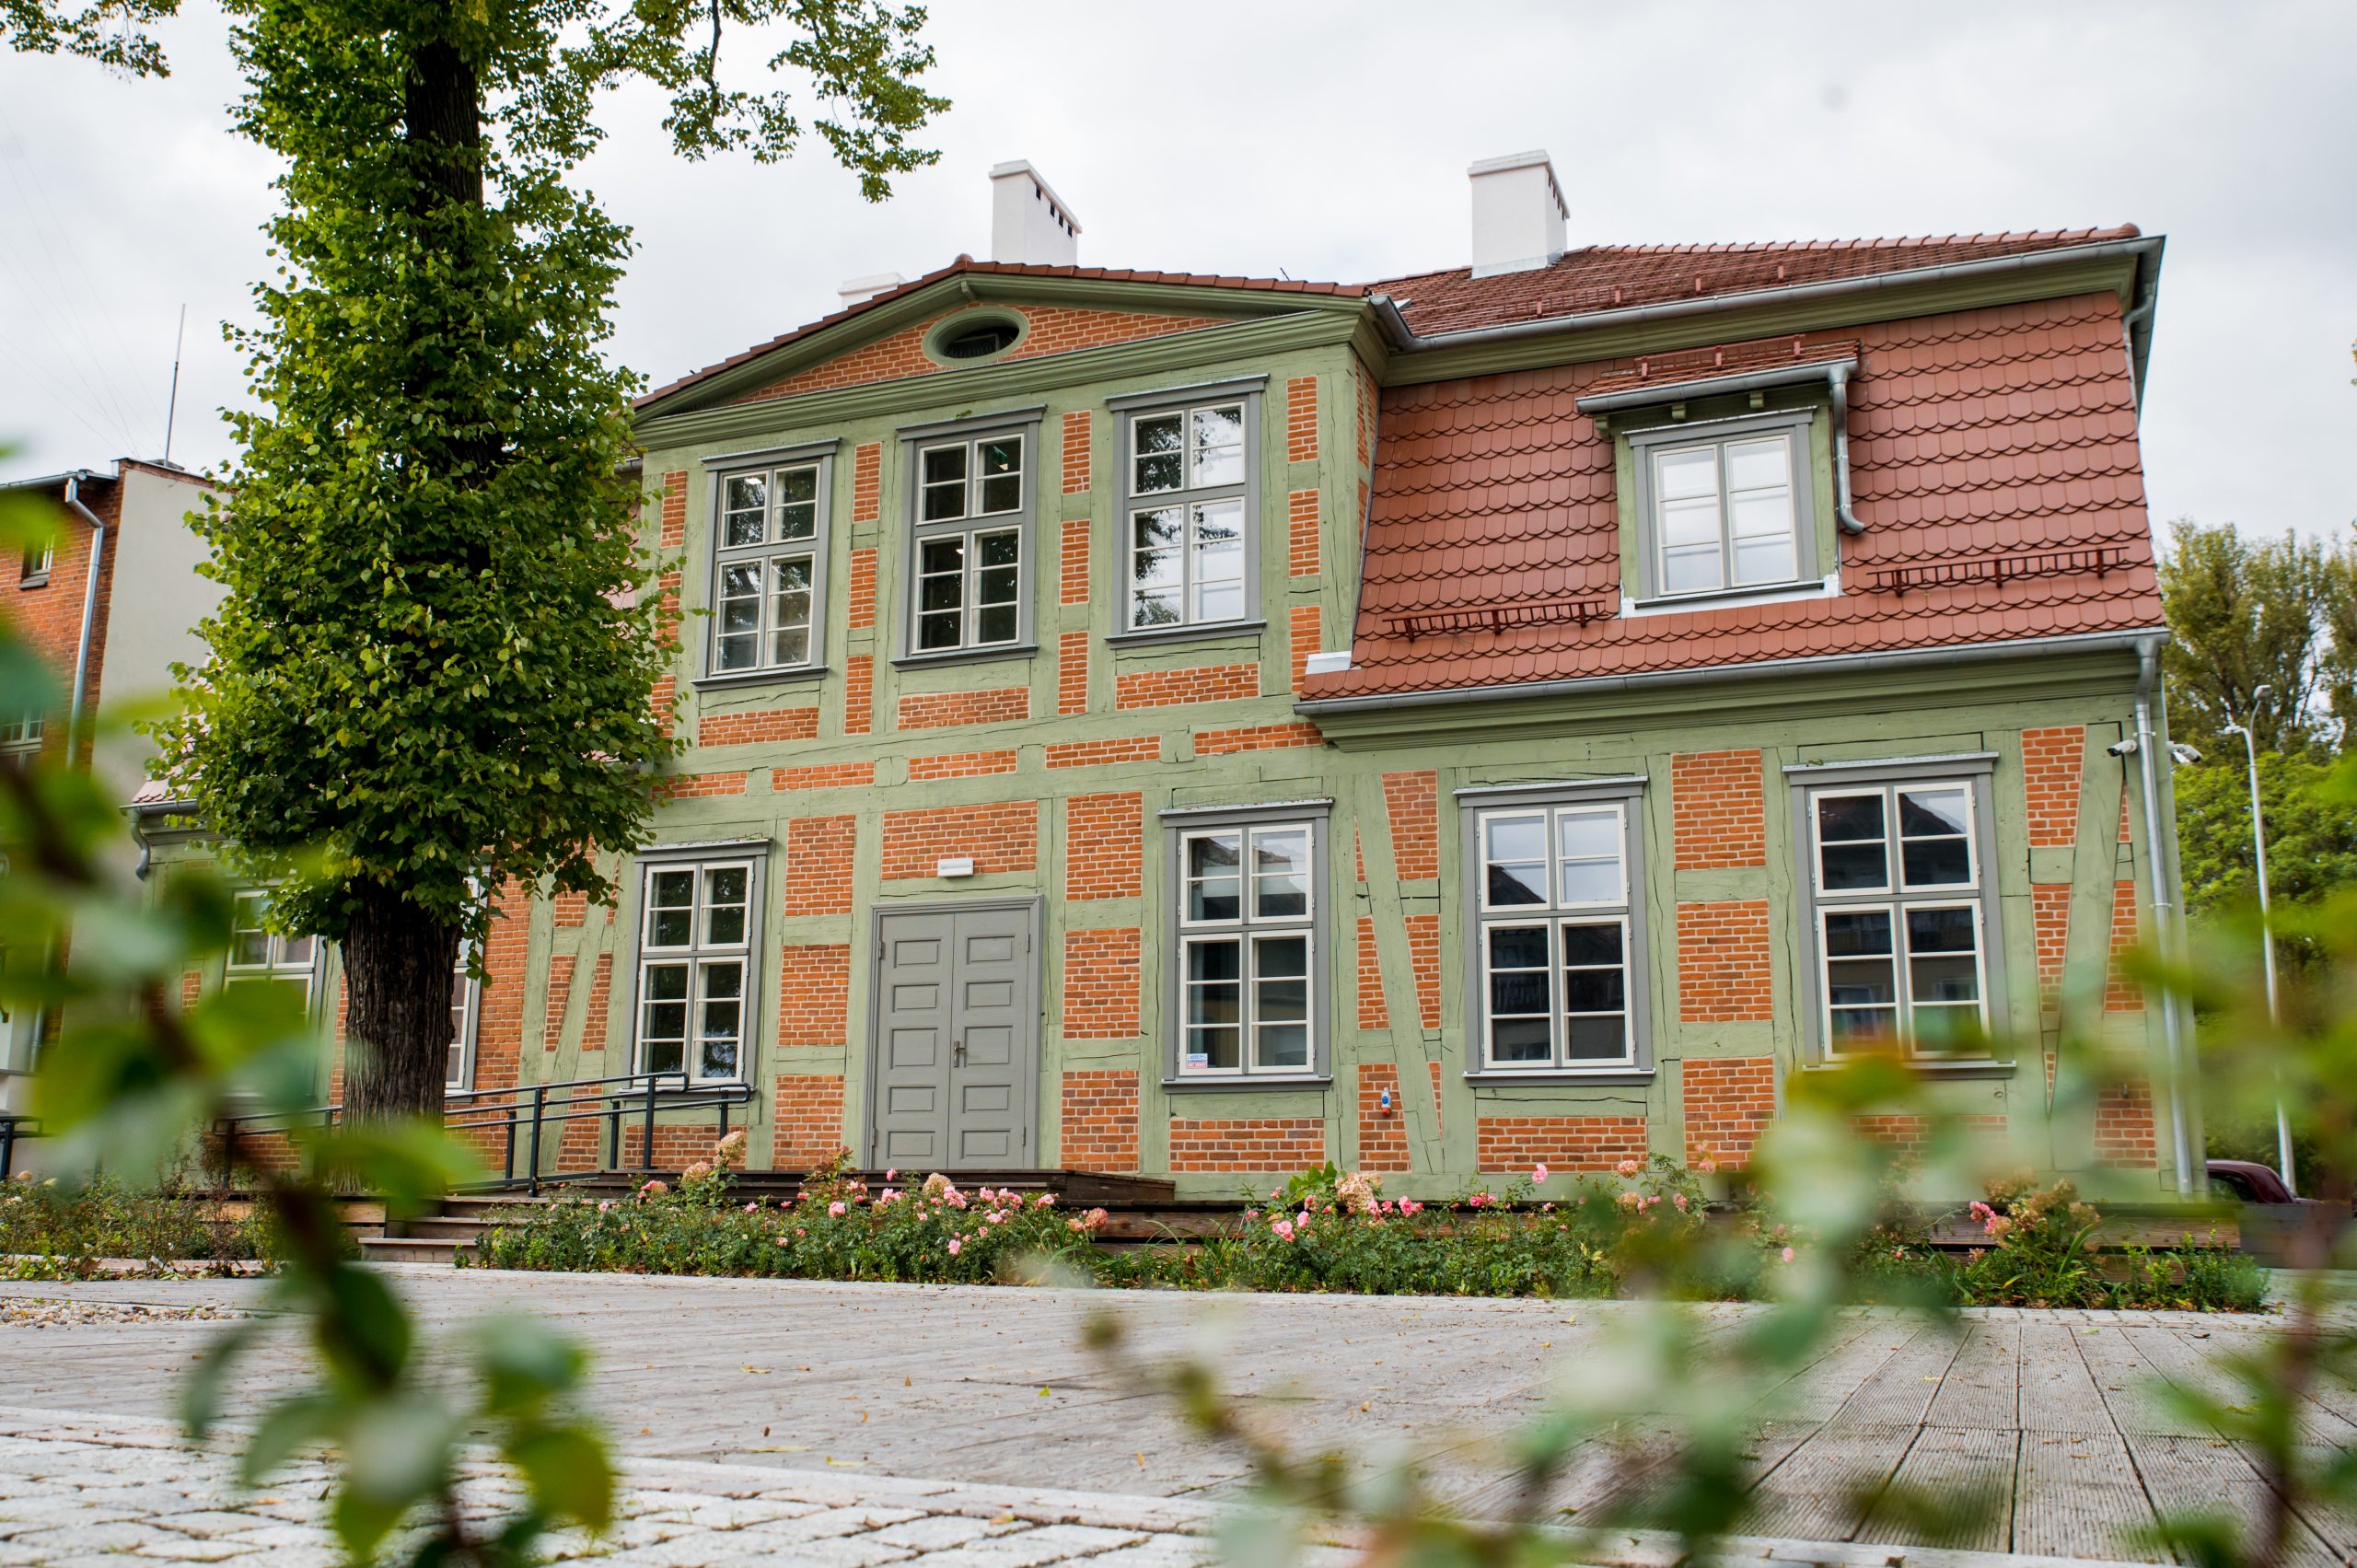 Dom Wiedemanna w Pruszczu Gdańskim. Widok od frontu.